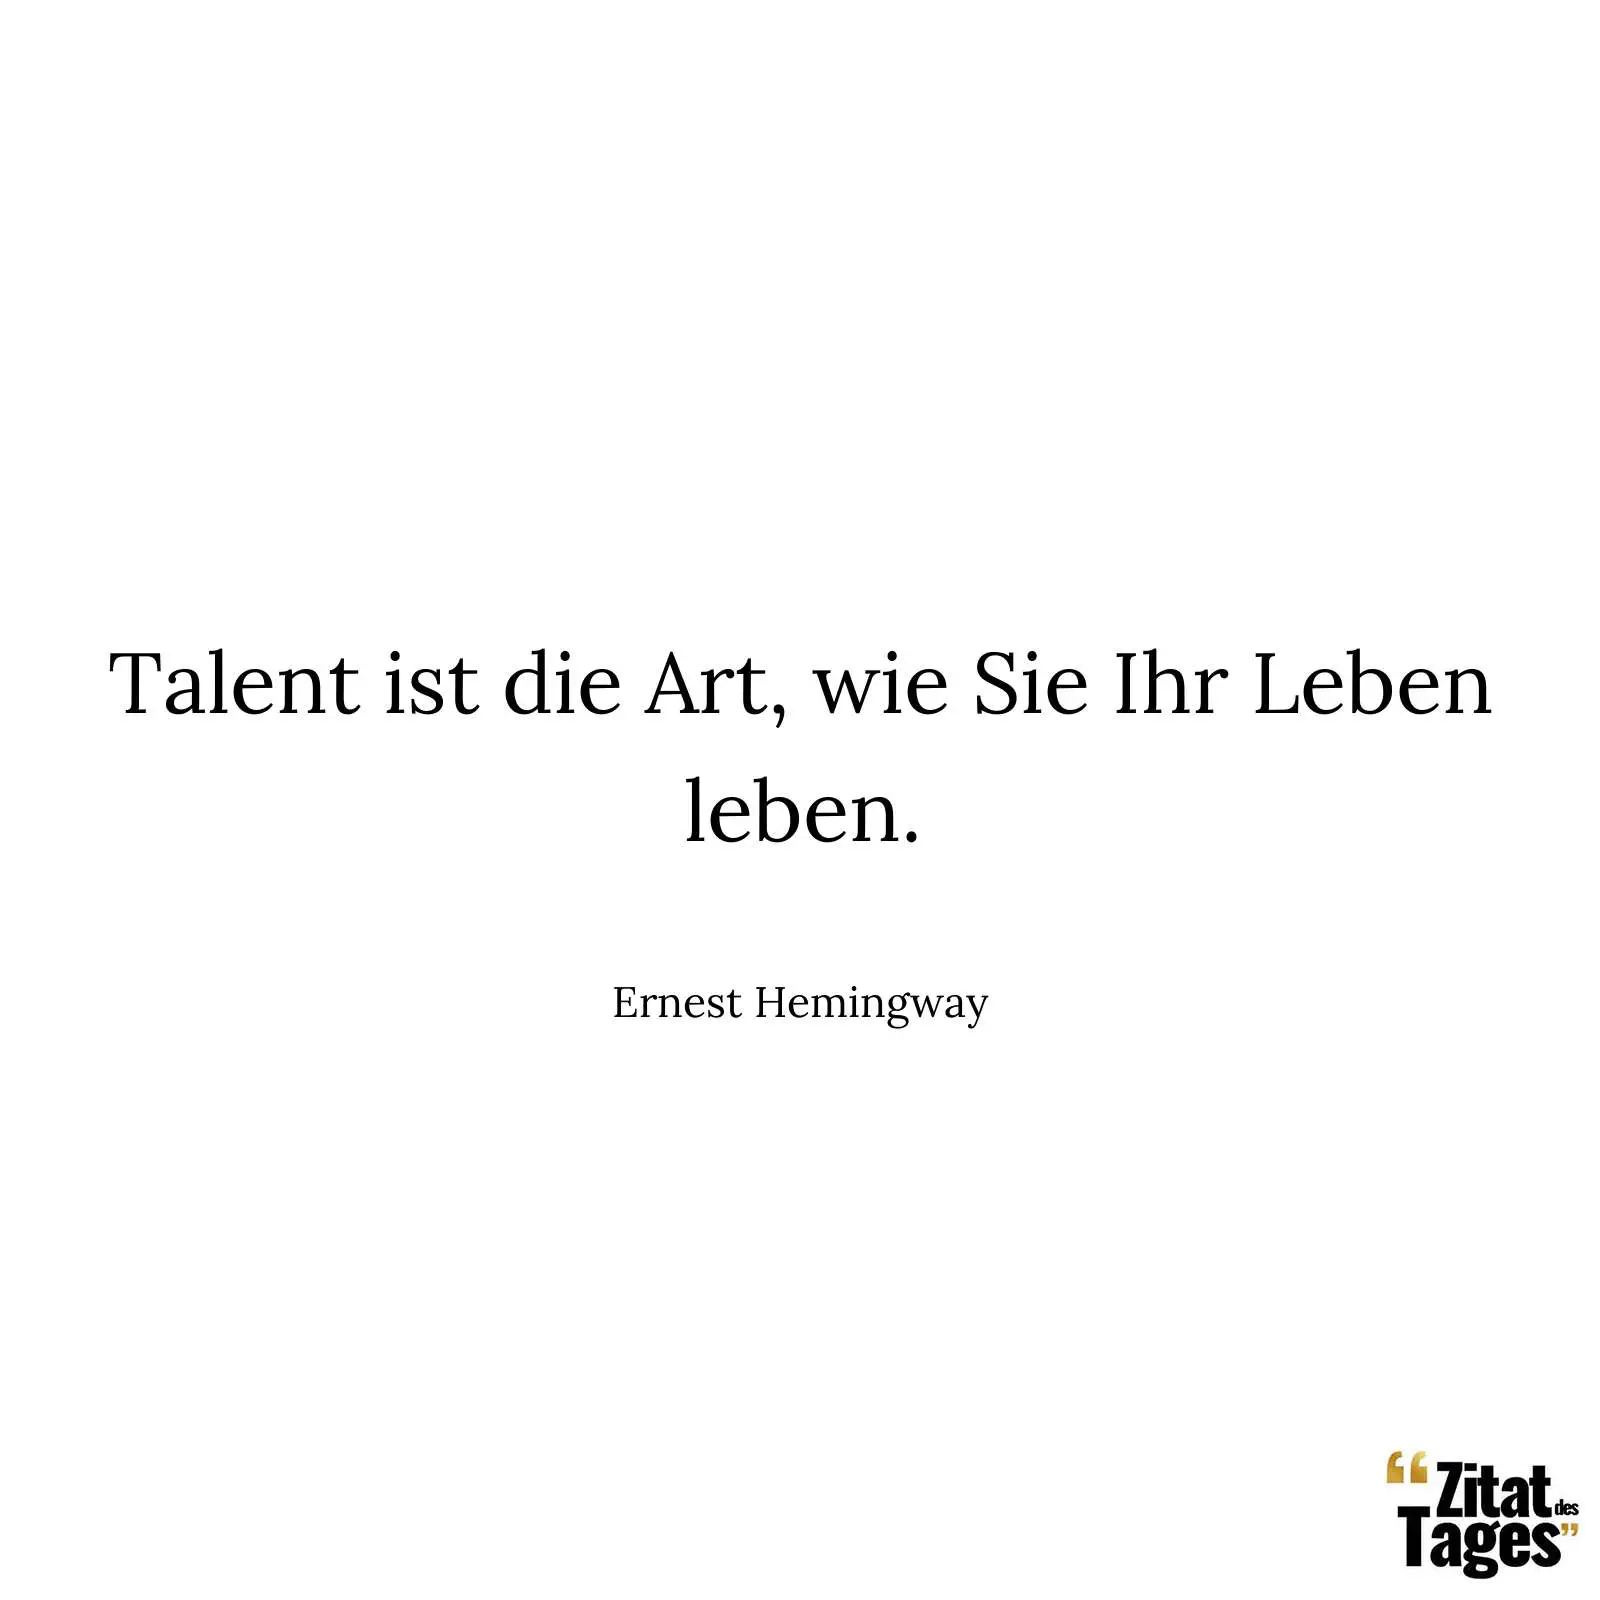 Talent ist die Art, wie Sie Ihr Leben leben. - Ernest Hemingway